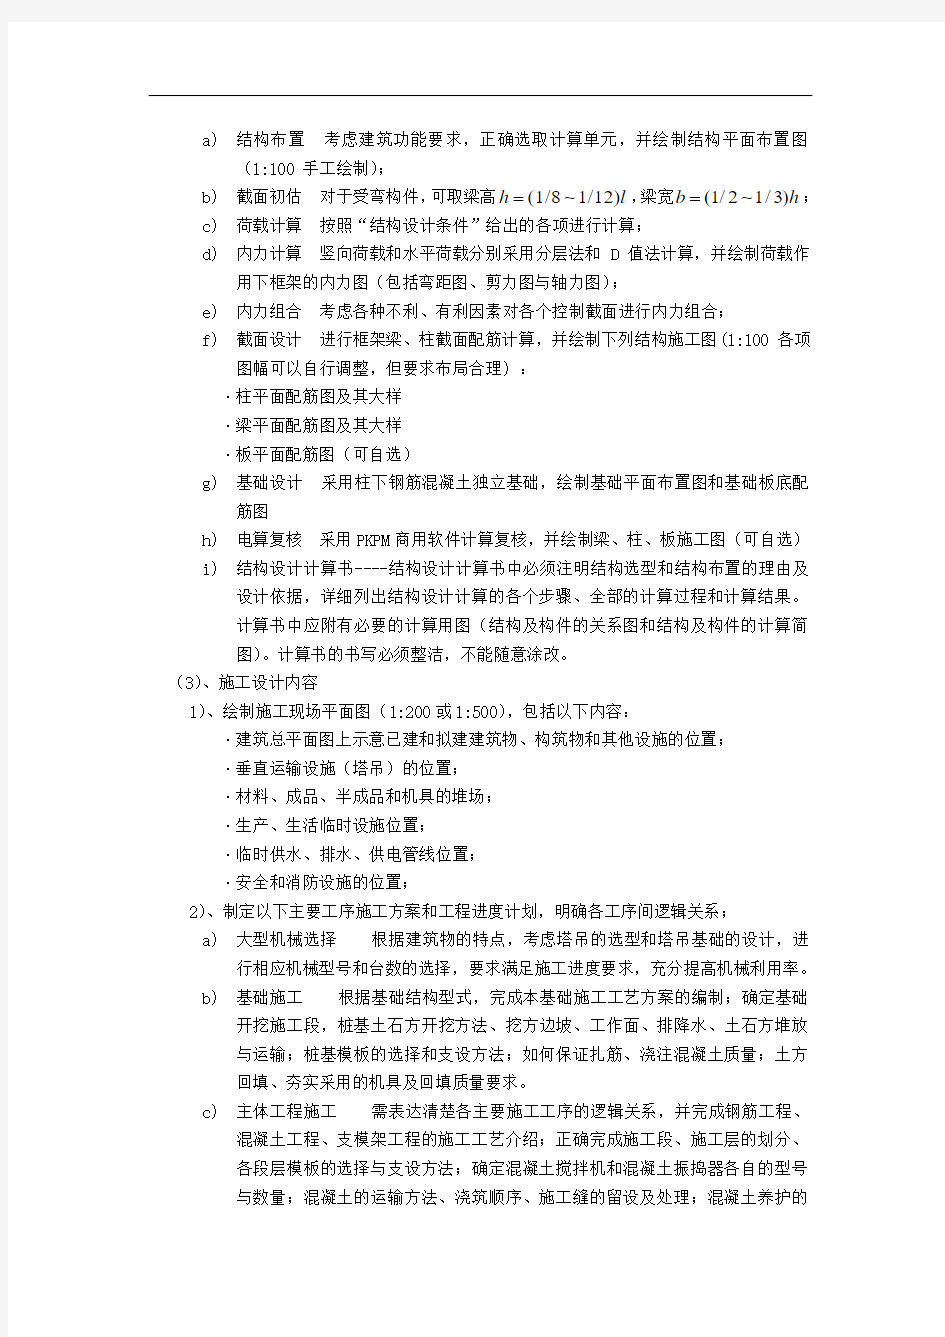 重庆大学网络教育学院毕业设计要求说明.